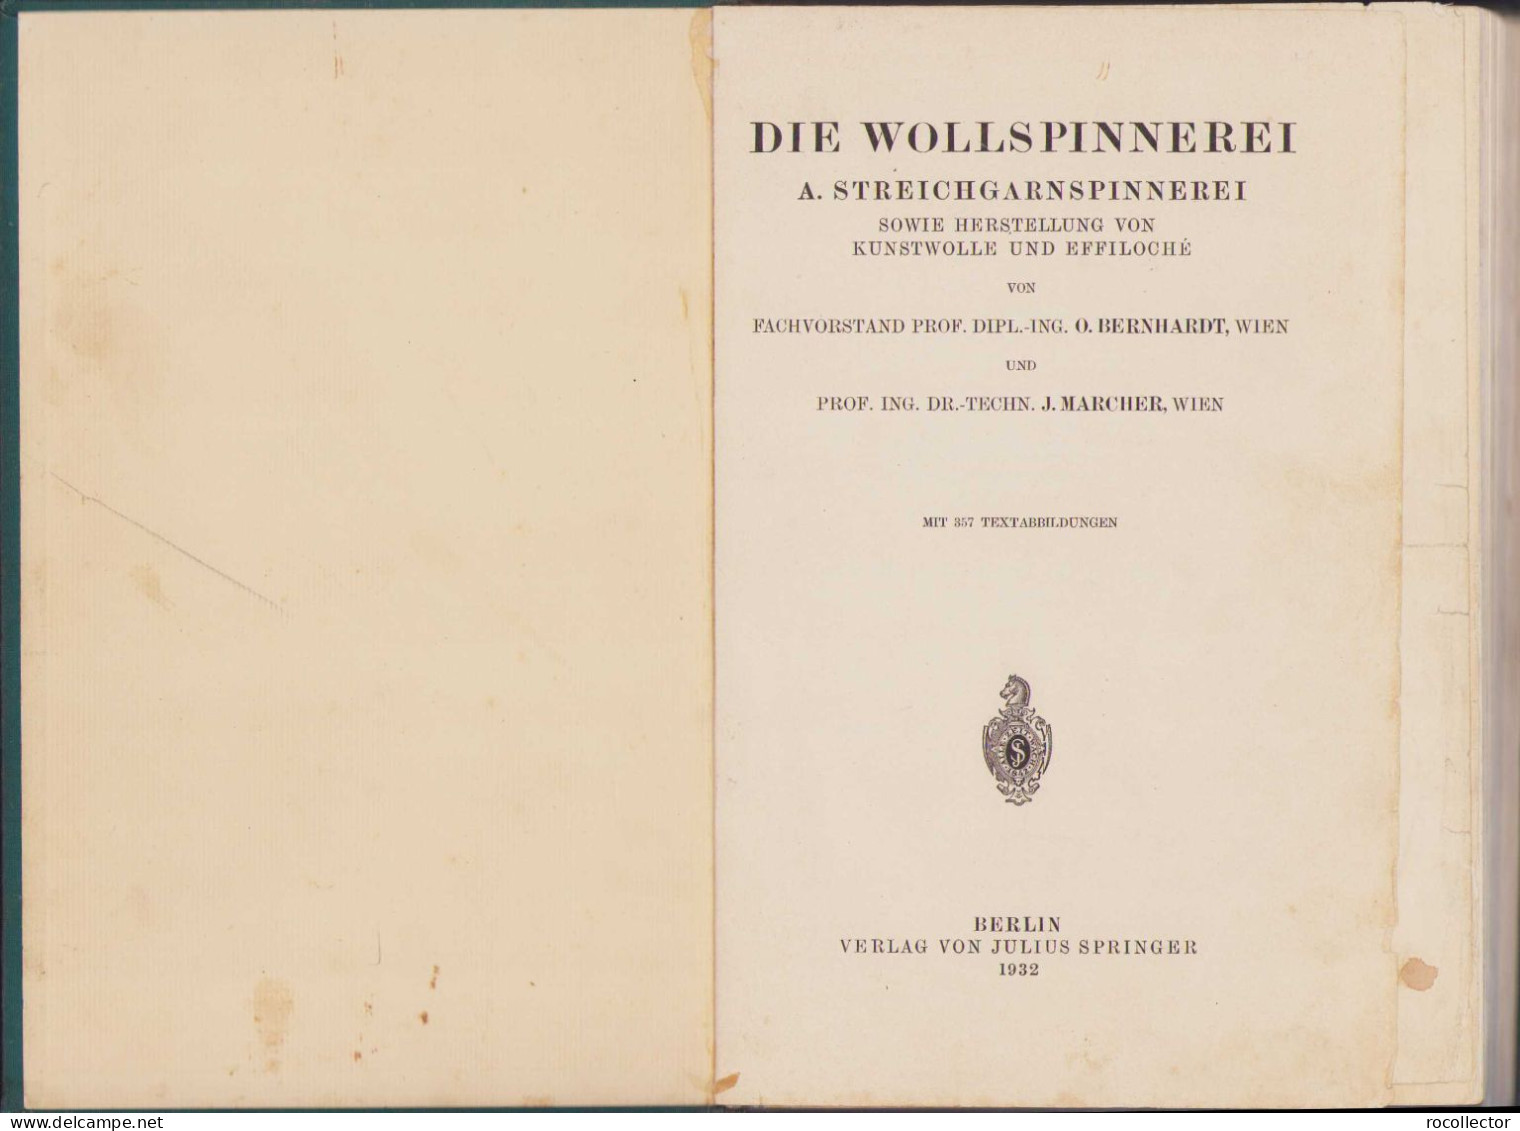 Die Wollspinnerei 1932 By O. Bernhardt And J. Marcher, Berlin 78SP - Oude Boeken